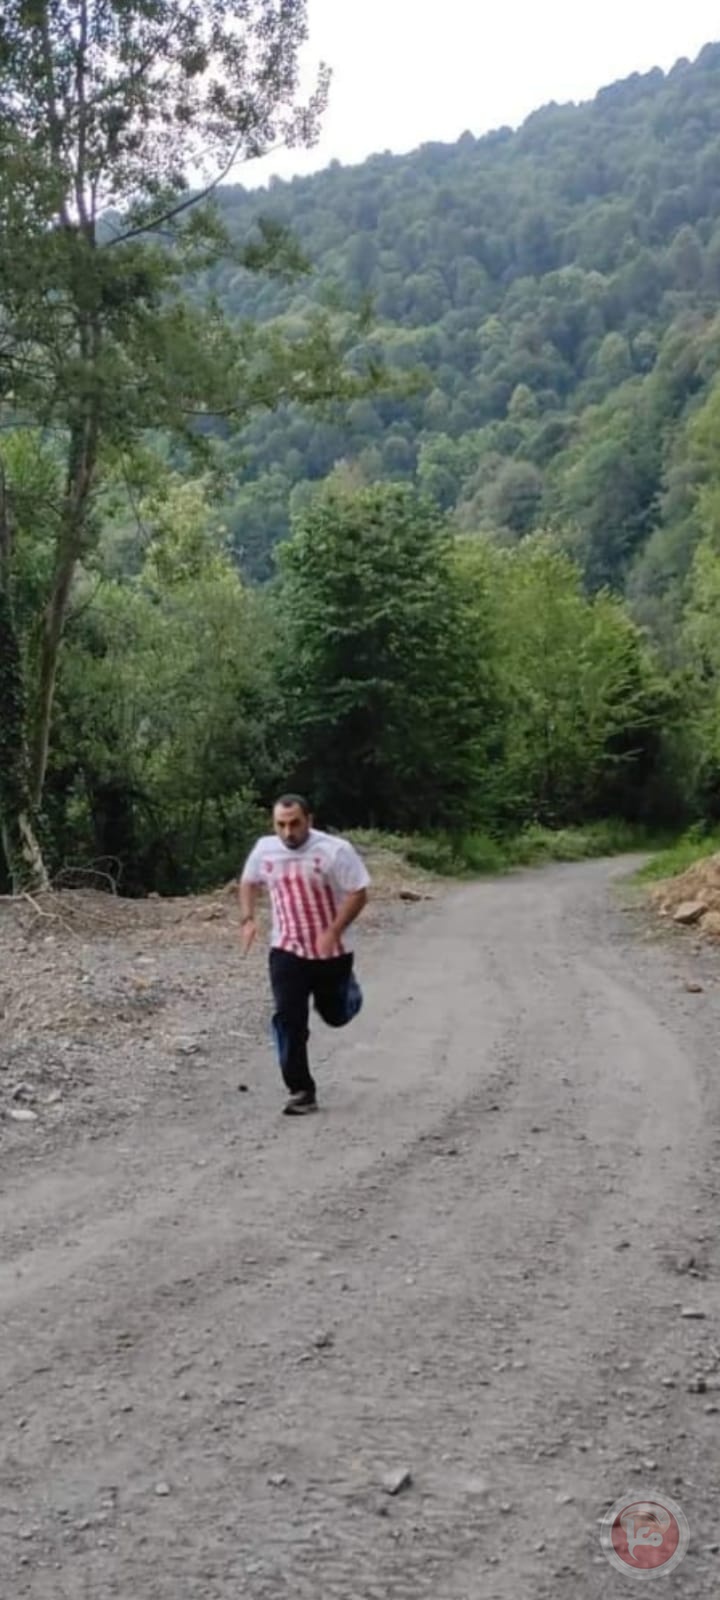 العداء الفسطيني الدولي للالتراماراثون سامي اسعد نتيل يعسكر في غابات تركيا